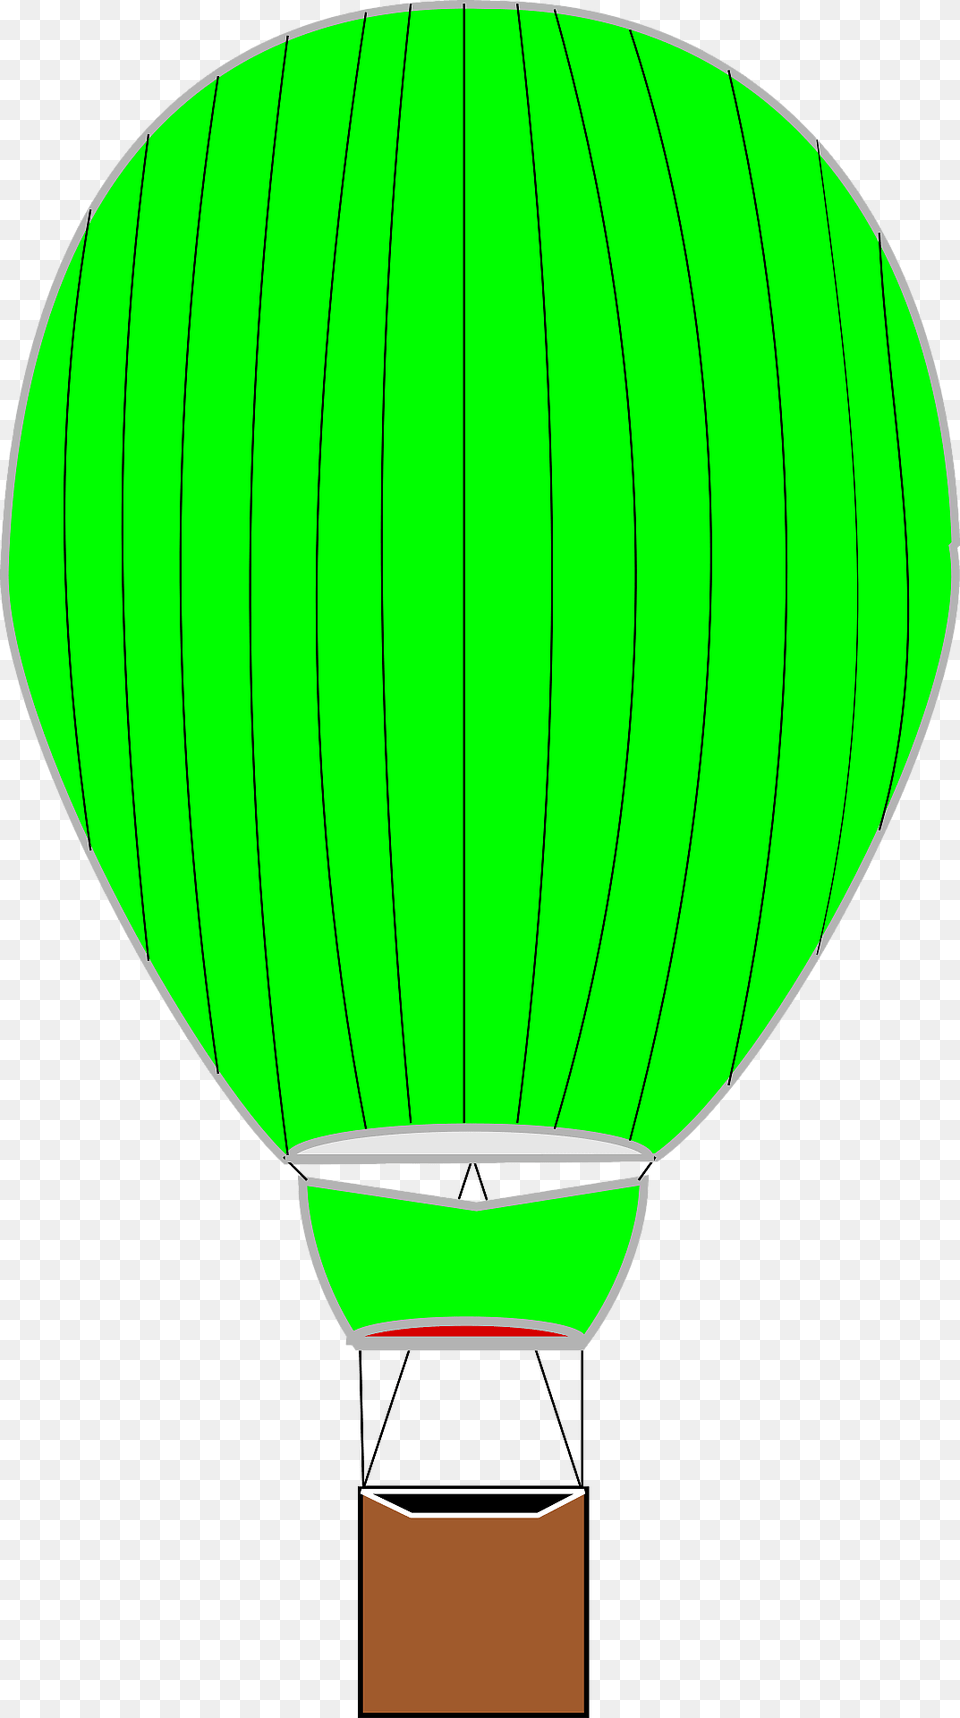 Green Hot Air Balloon Clipart, Aircraft, Transportation, Vehicle, Hot Air Balloon Free Png